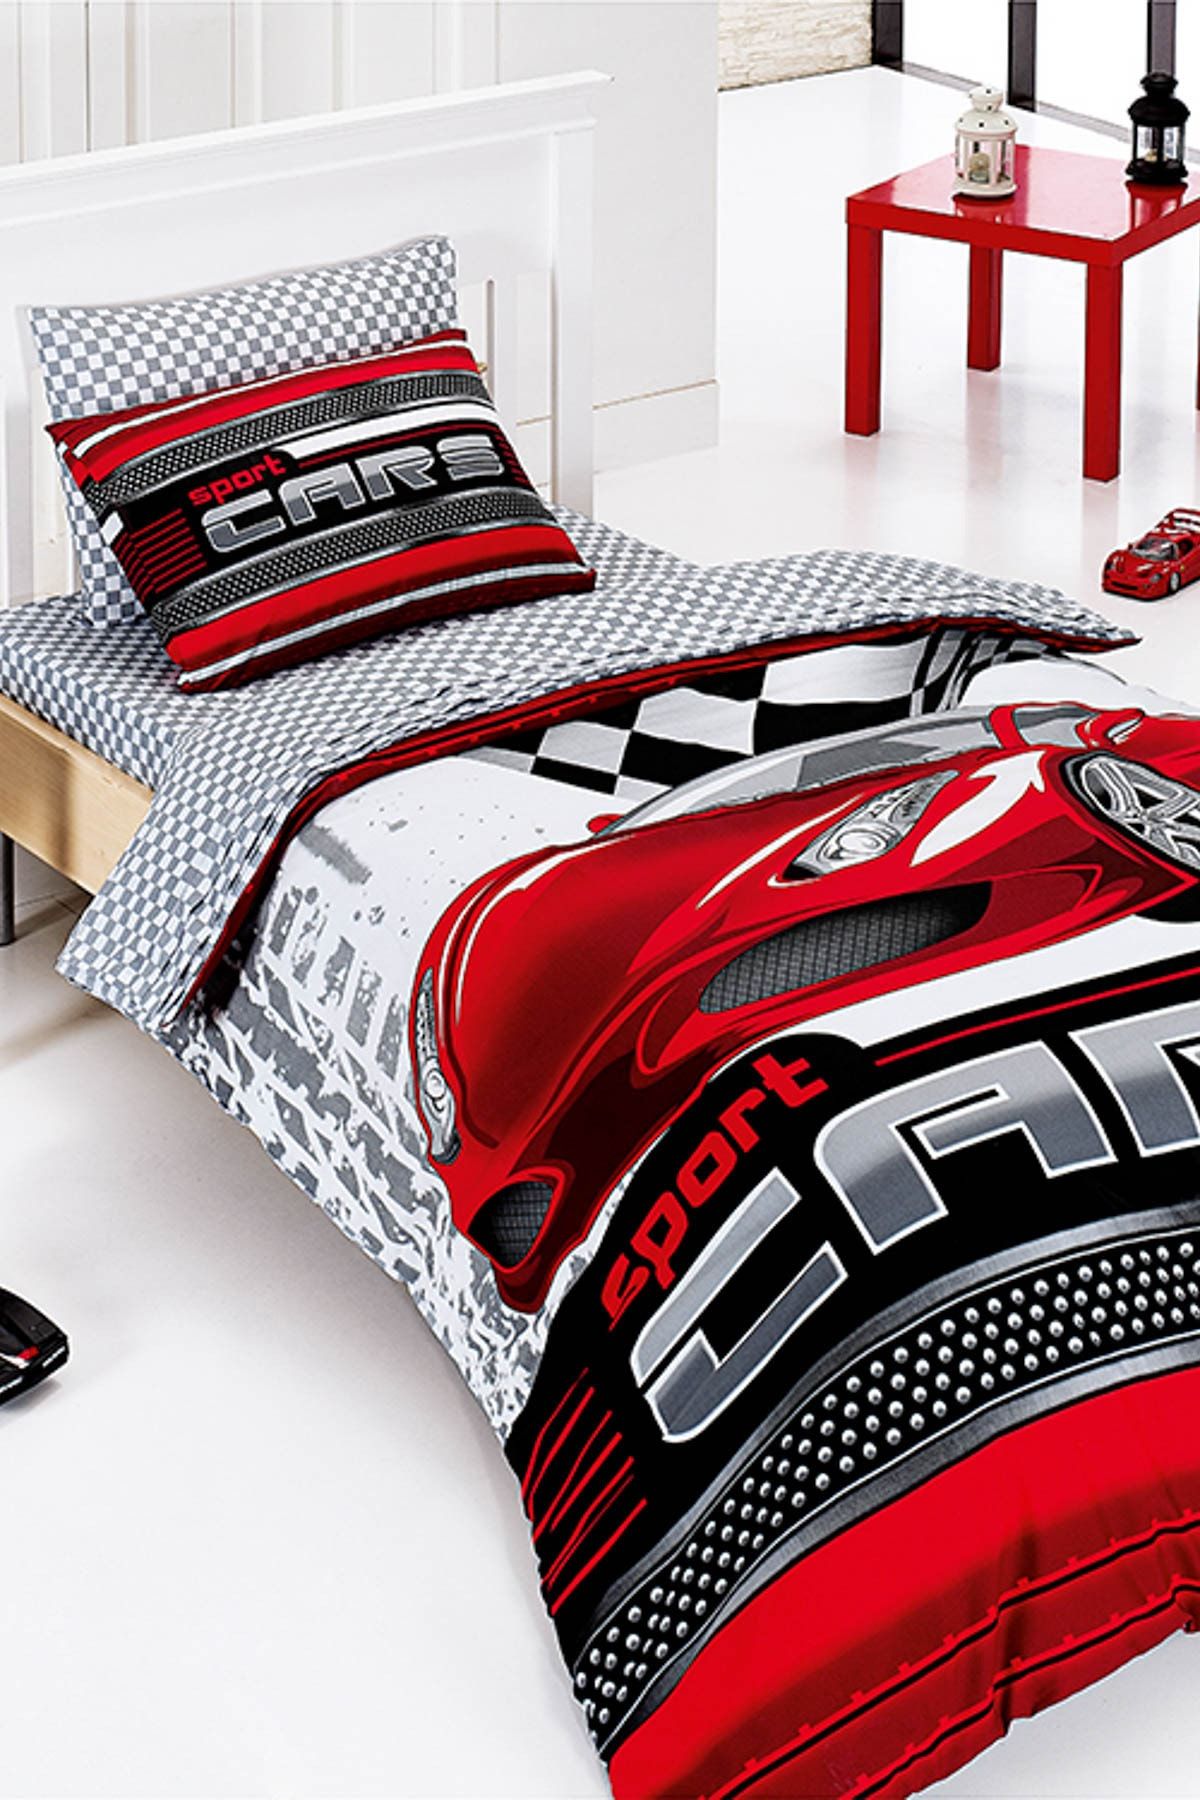 Bayev Erkek Çocuklar İçin Kırmızı Tek Kişilik Uyku Seti Sports Cars